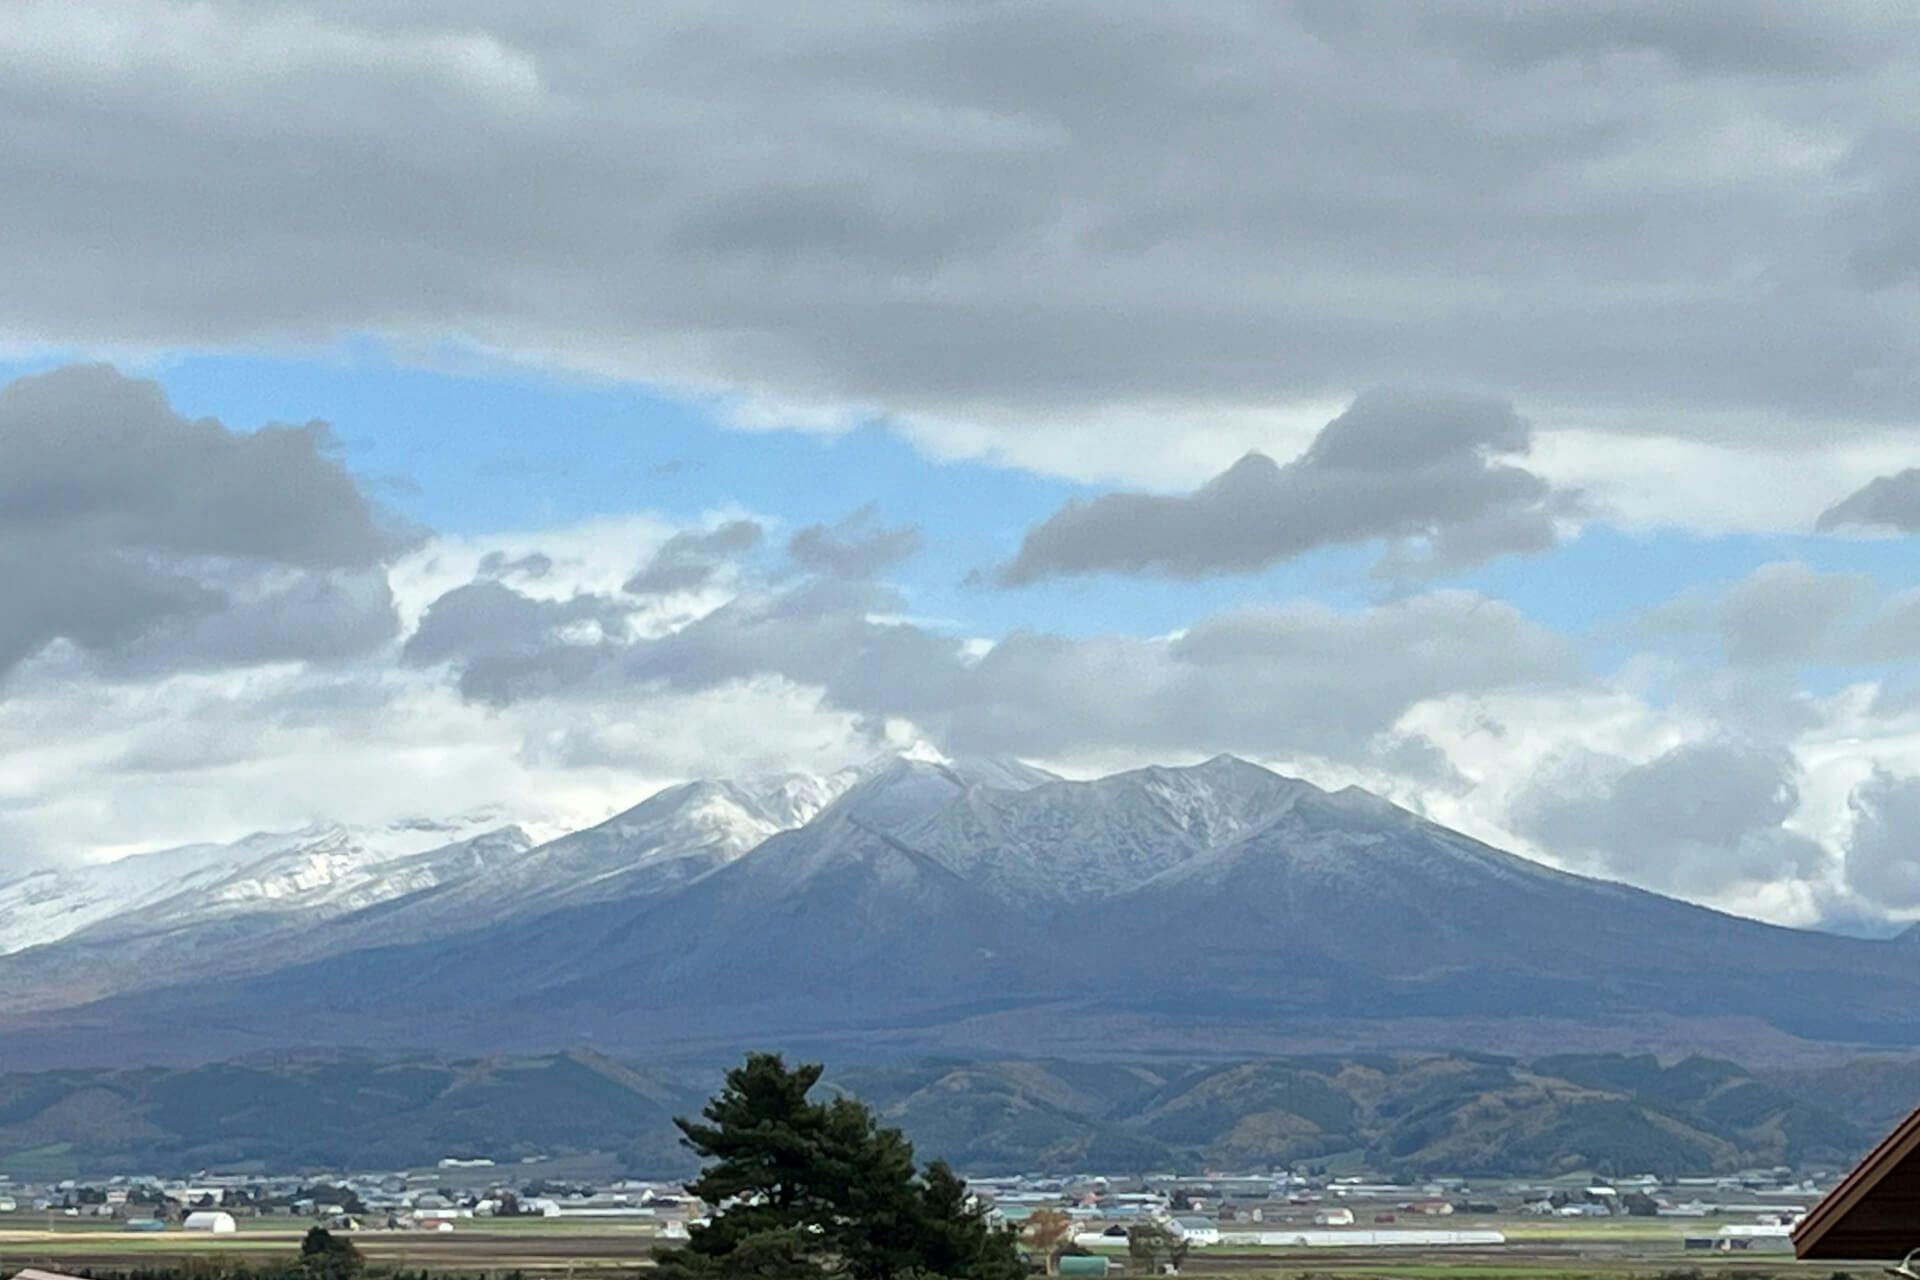 Mount Daisetsu in Hokkaido